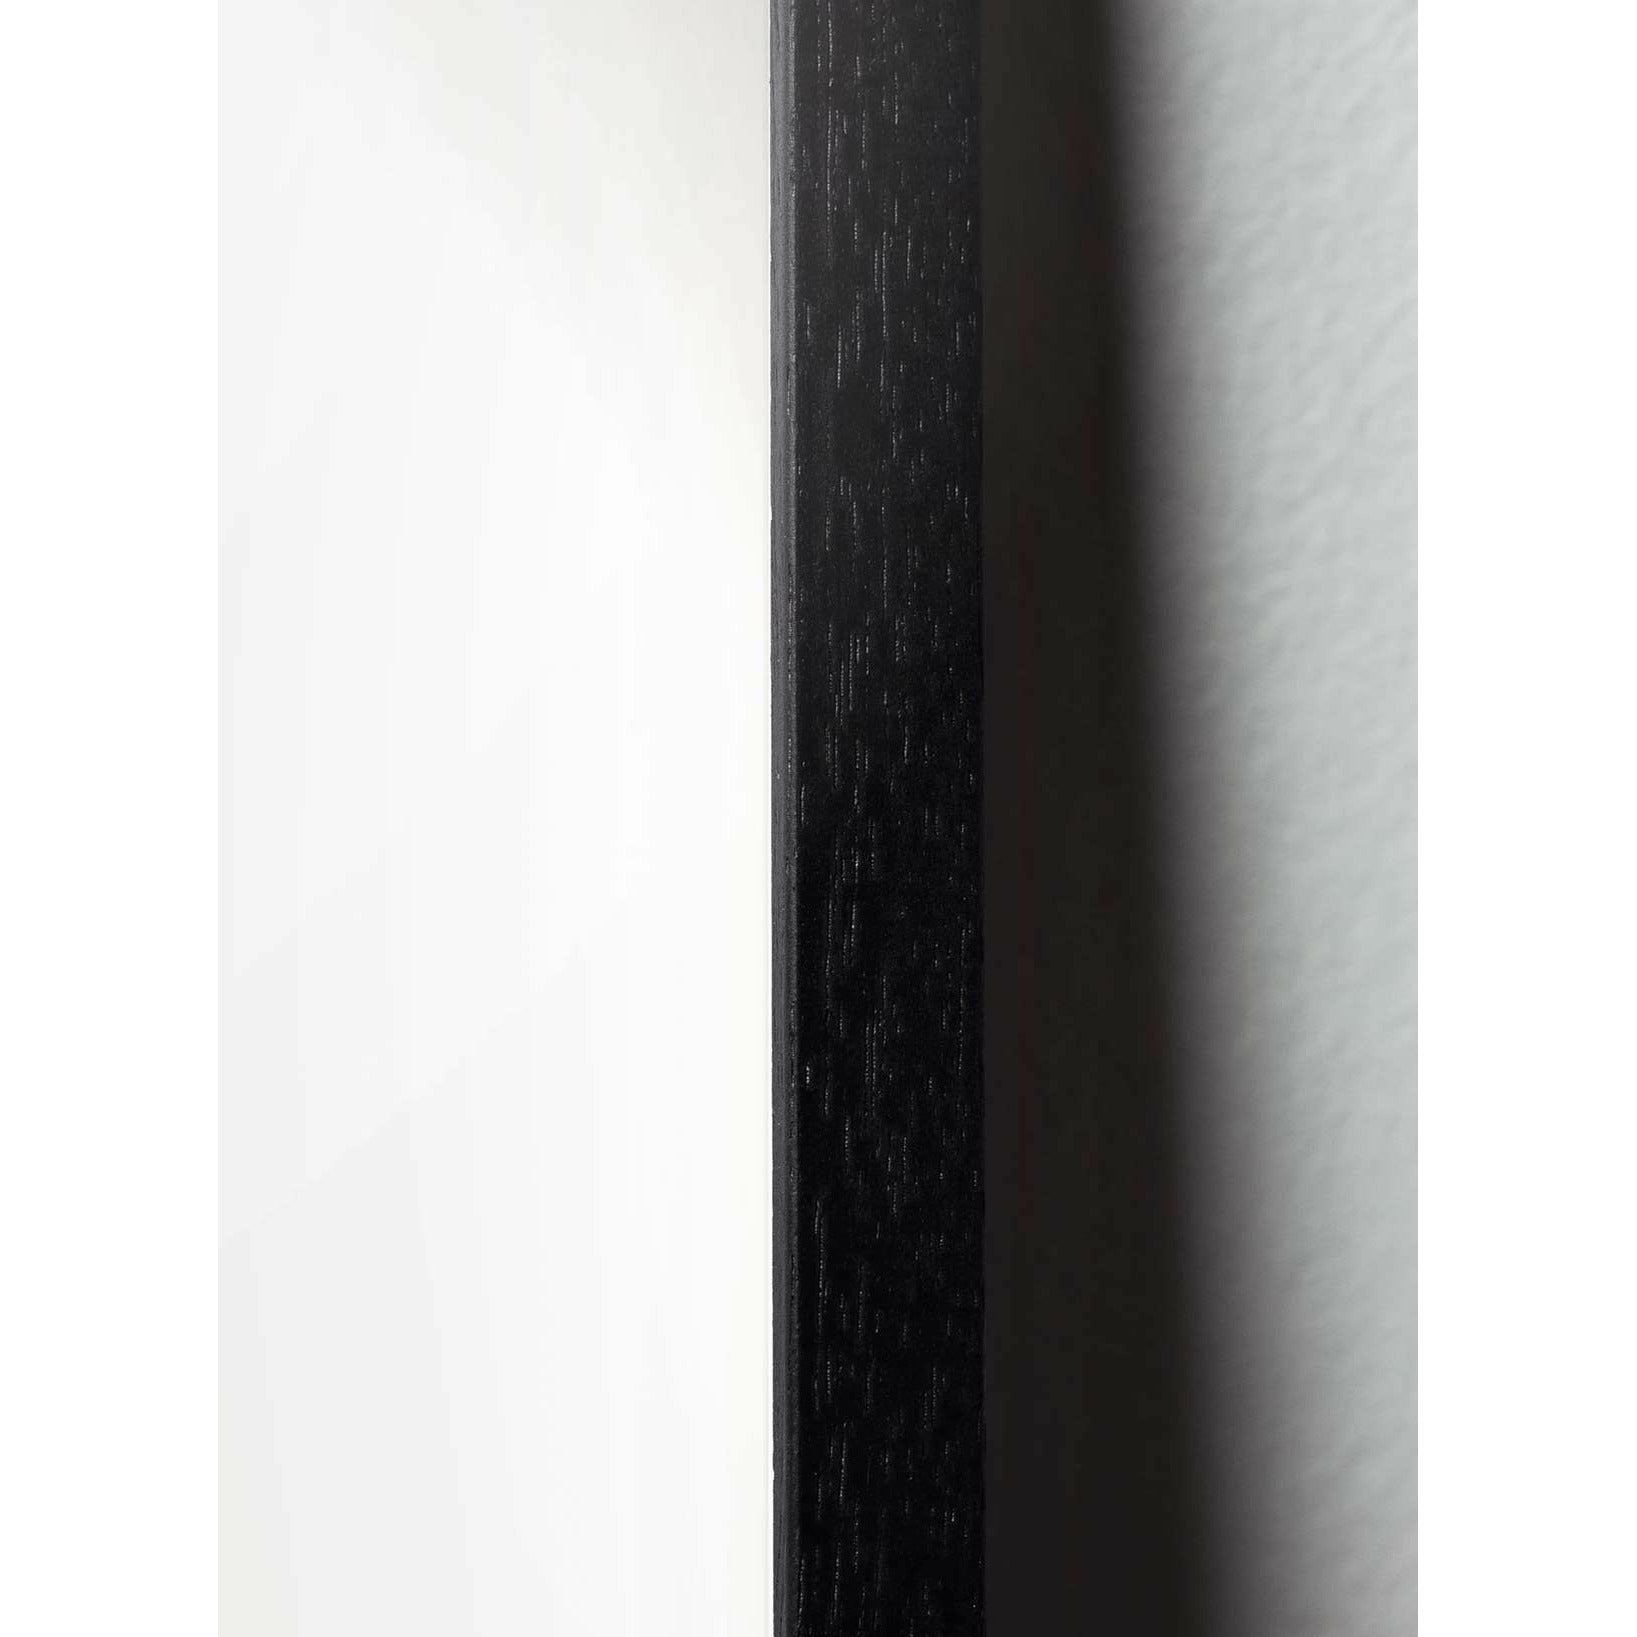 brainchild Swan Classic Poster, Rahmen in schwarz lackiertem Holz 50x70 cm, schwarzer/schwarzer Hintergrund